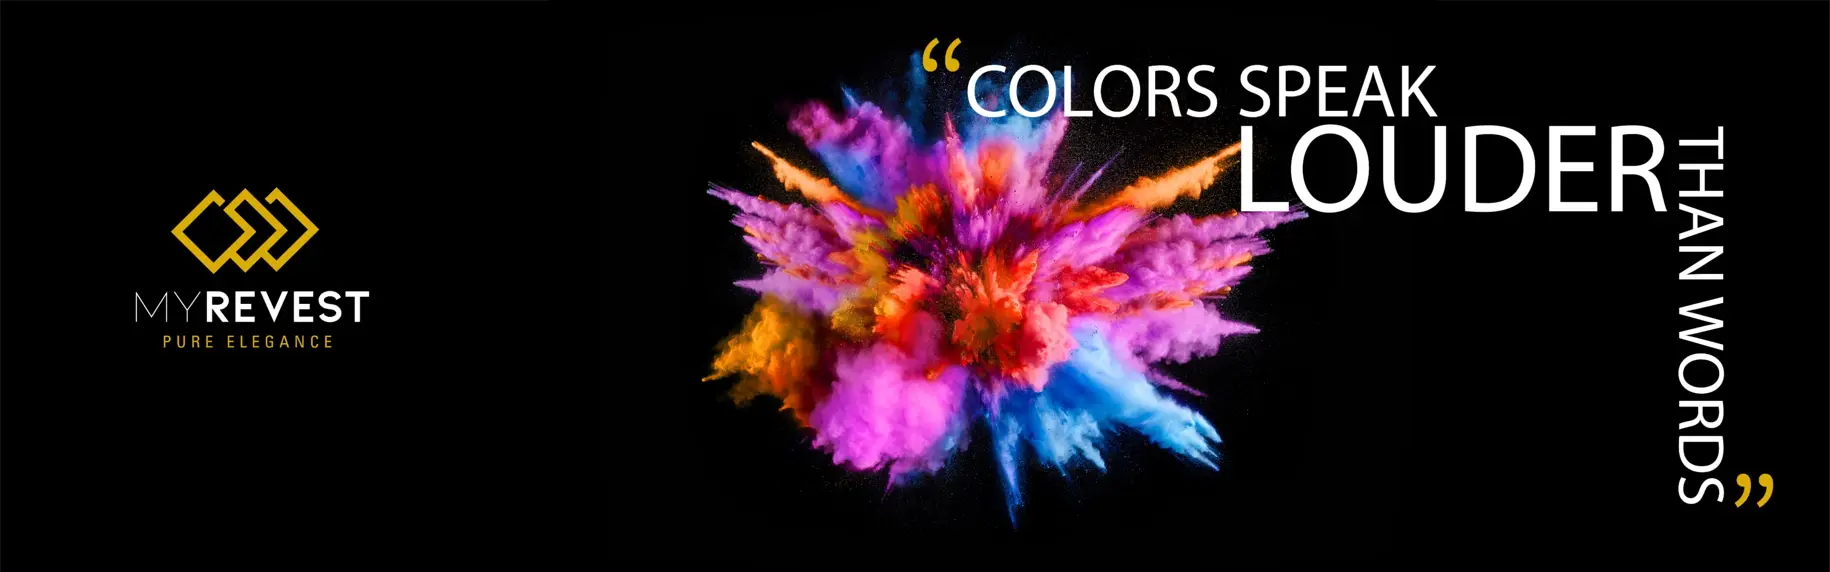 Eksplozija barv v modrih, vijoličnih, oranžnih in rumenih tonih